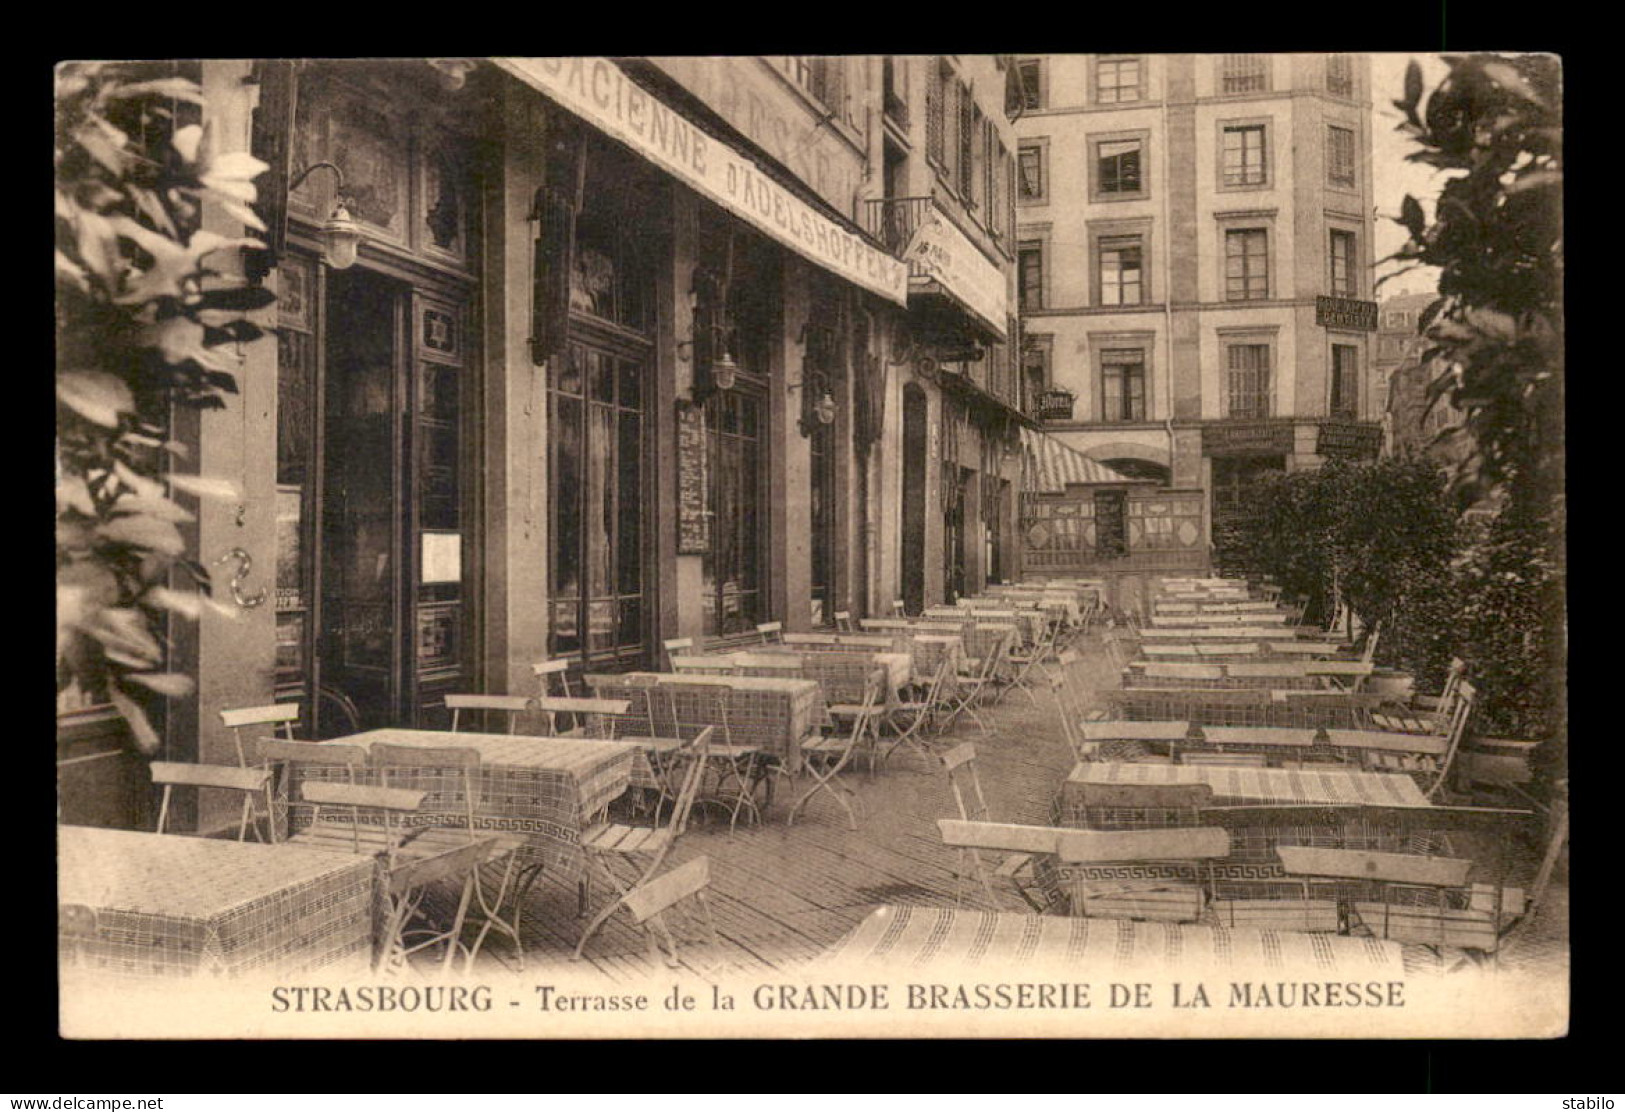 67 - STRASBOURG - TERRASSE DE LA GRANDE BRASSERIE DE LA MAURESSE J. SCHOTT - Strasbourg